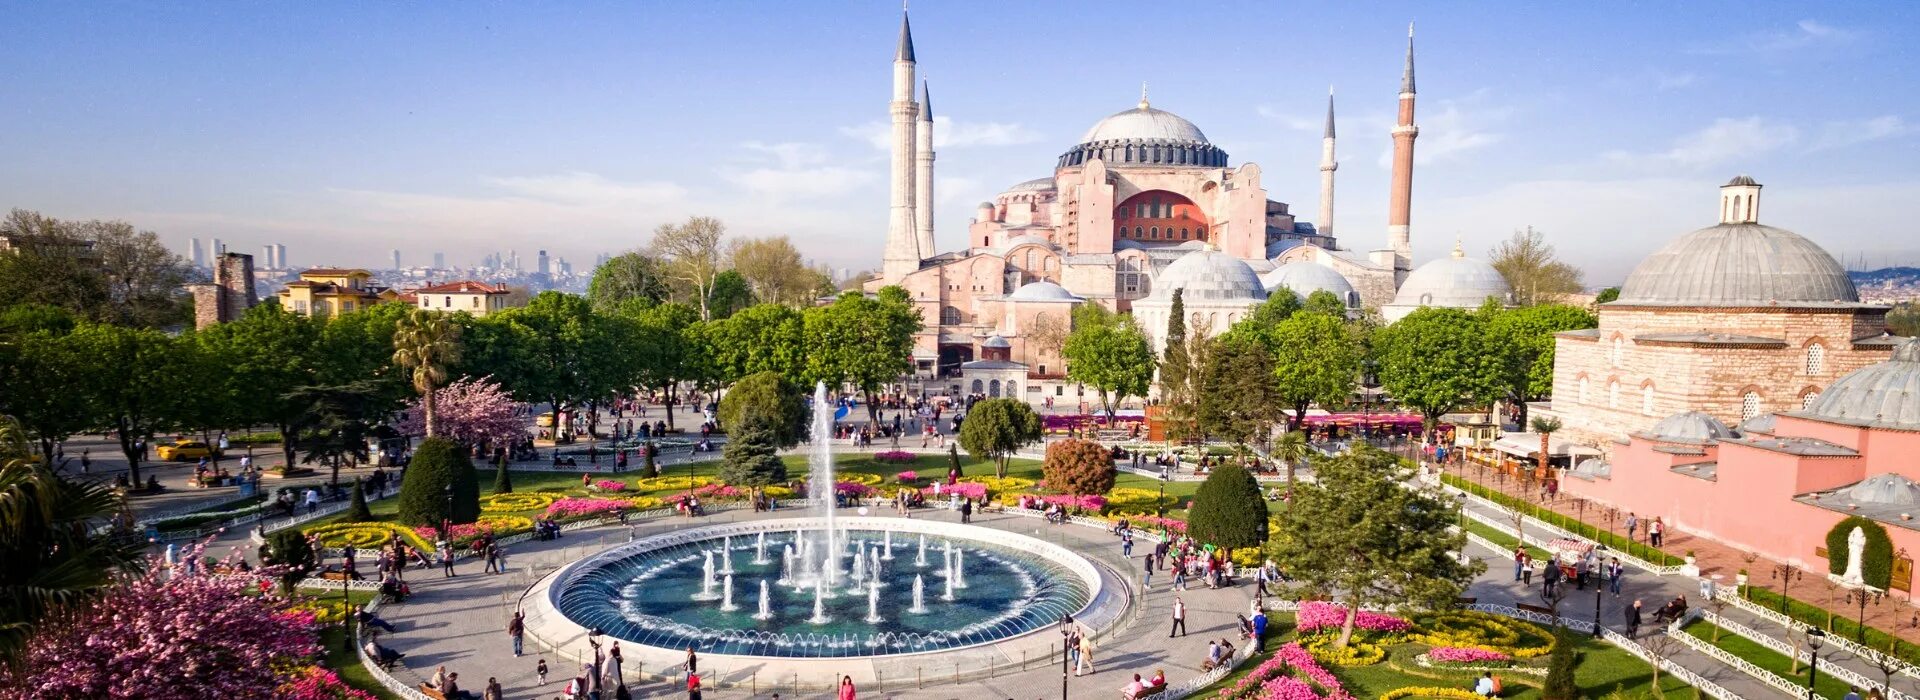 Турция столица Стамбул. Hagia Sophia Turkey. Стамбул Турция достопримечательности. Стамбул Султанахмет храм Святой. Тур в стамбул из минеральных